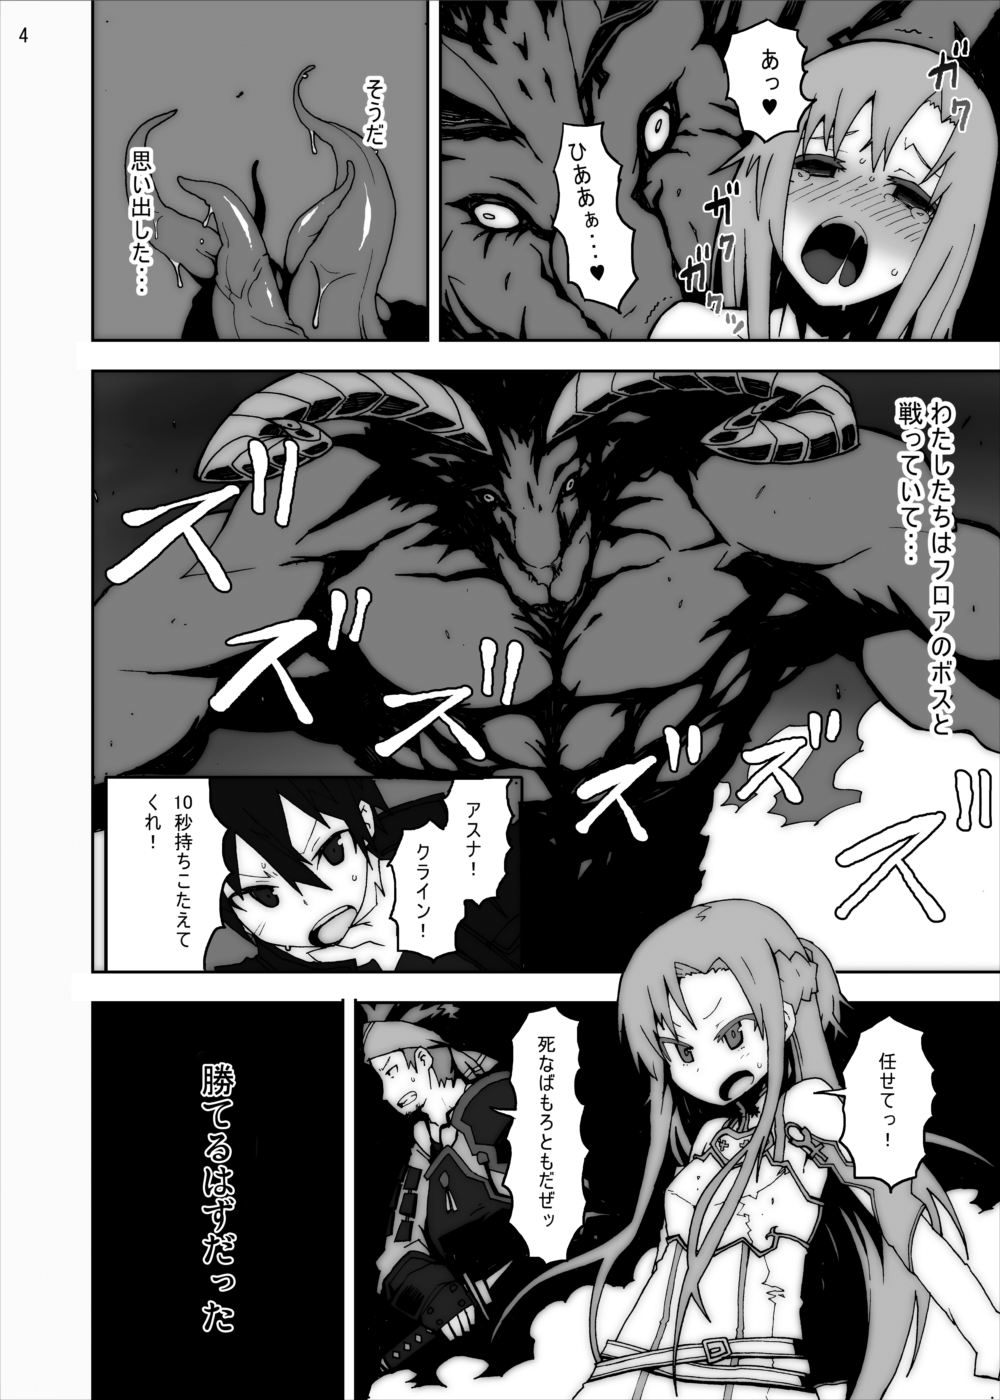 [Studio Nunchaku] Asuna in Tentacle Party Rape Online (Sword Art Online) page 3 full